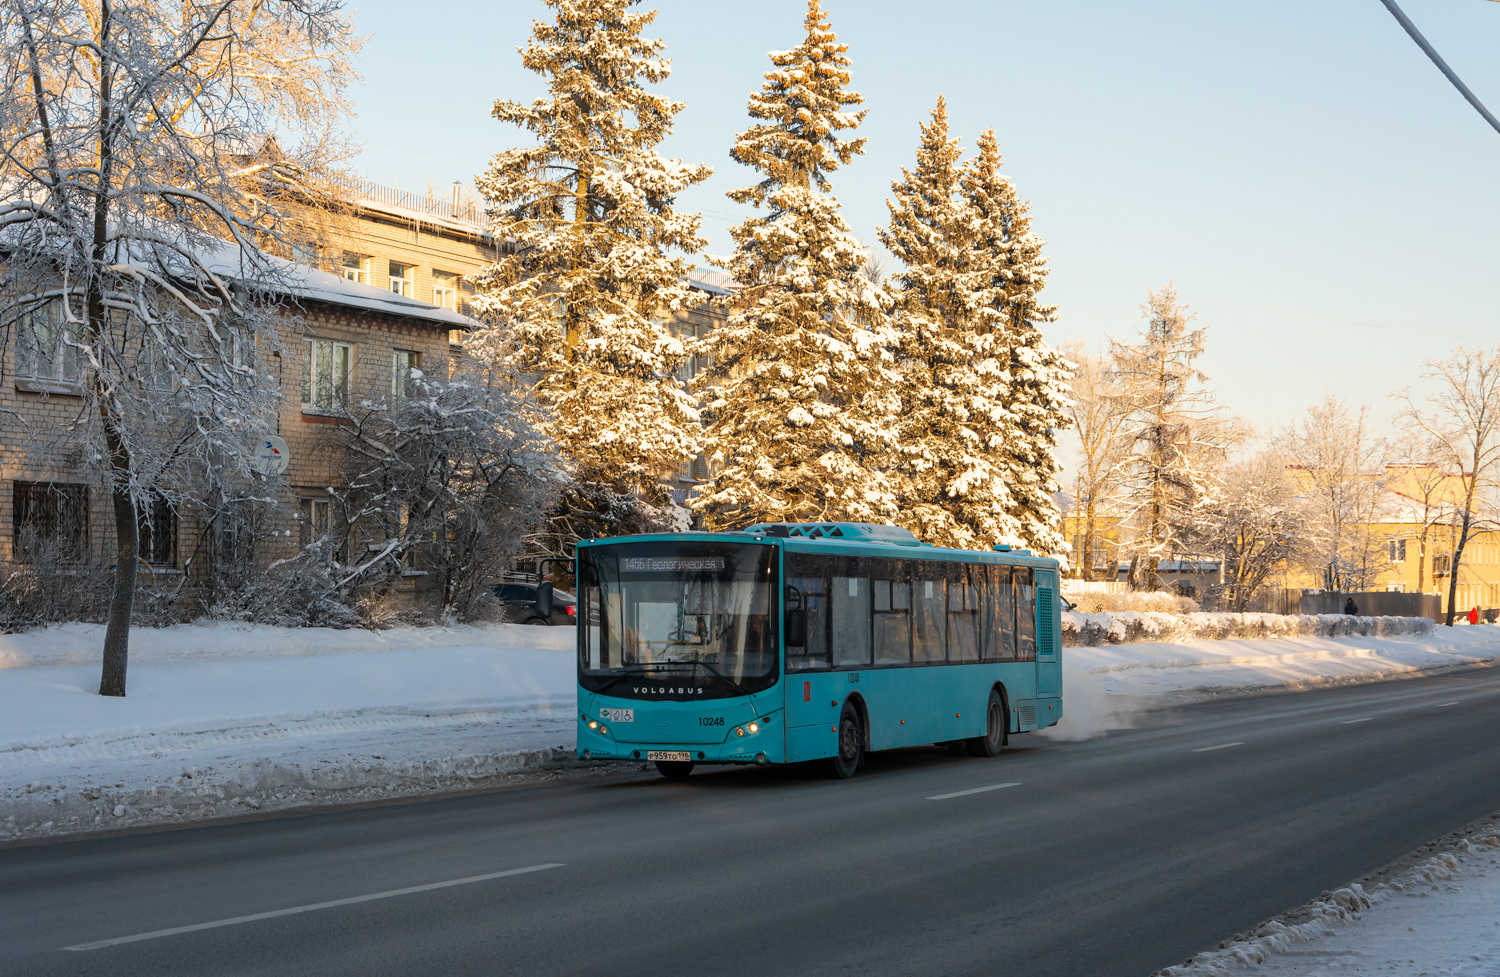 Saint-Pétersbourg, Volgabus-5270.G4 (LNG) # 10248